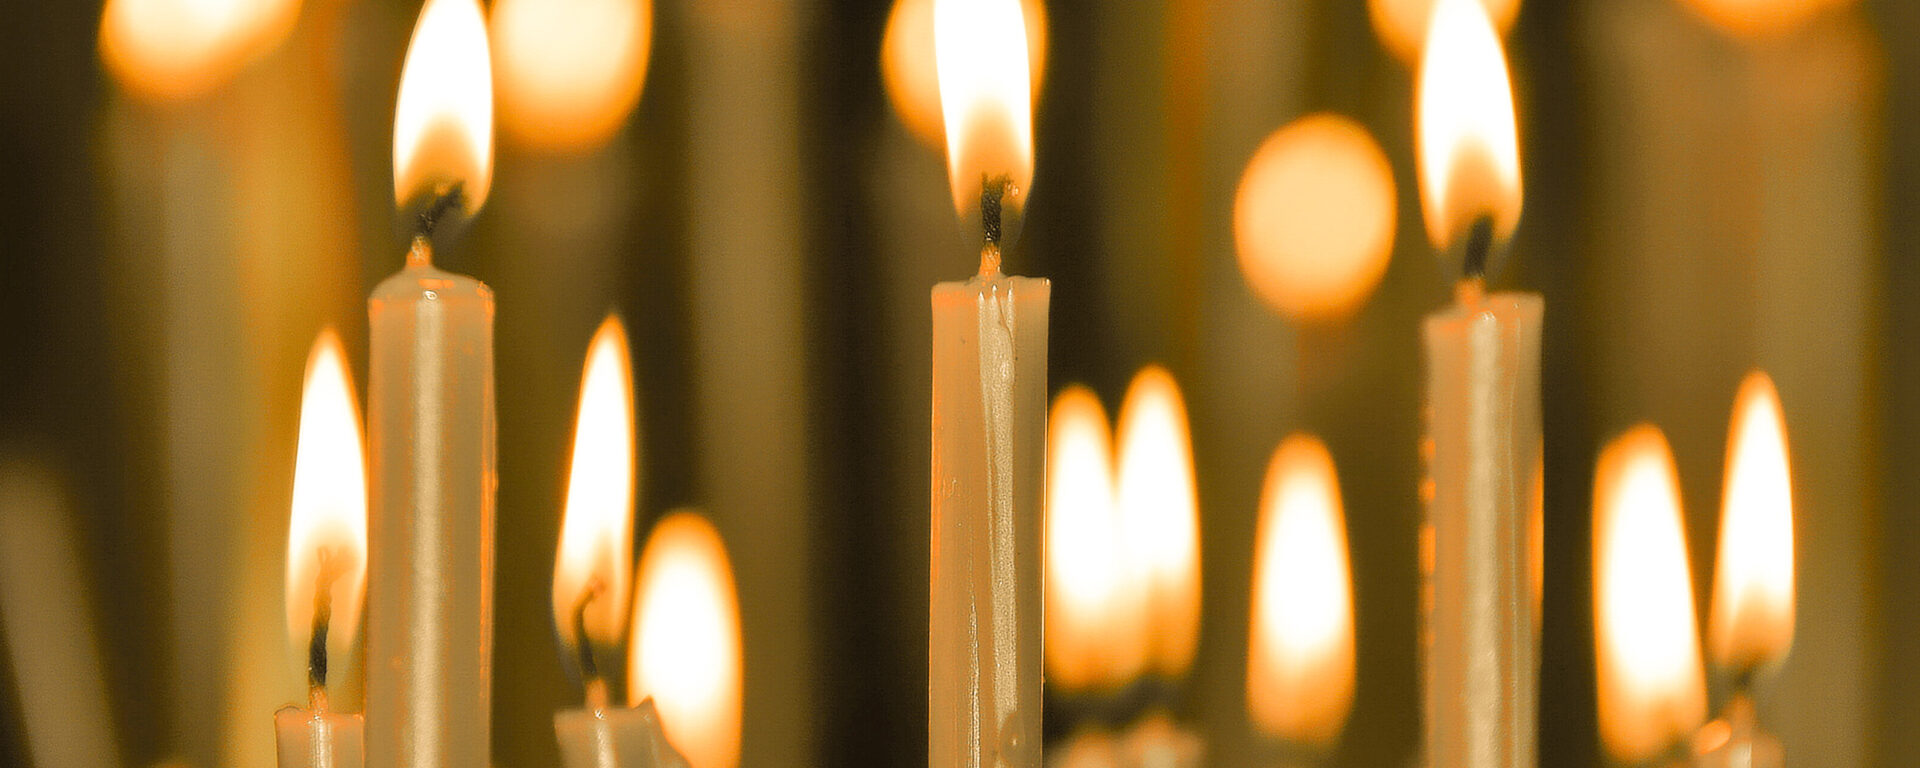 Burning candles during worship.